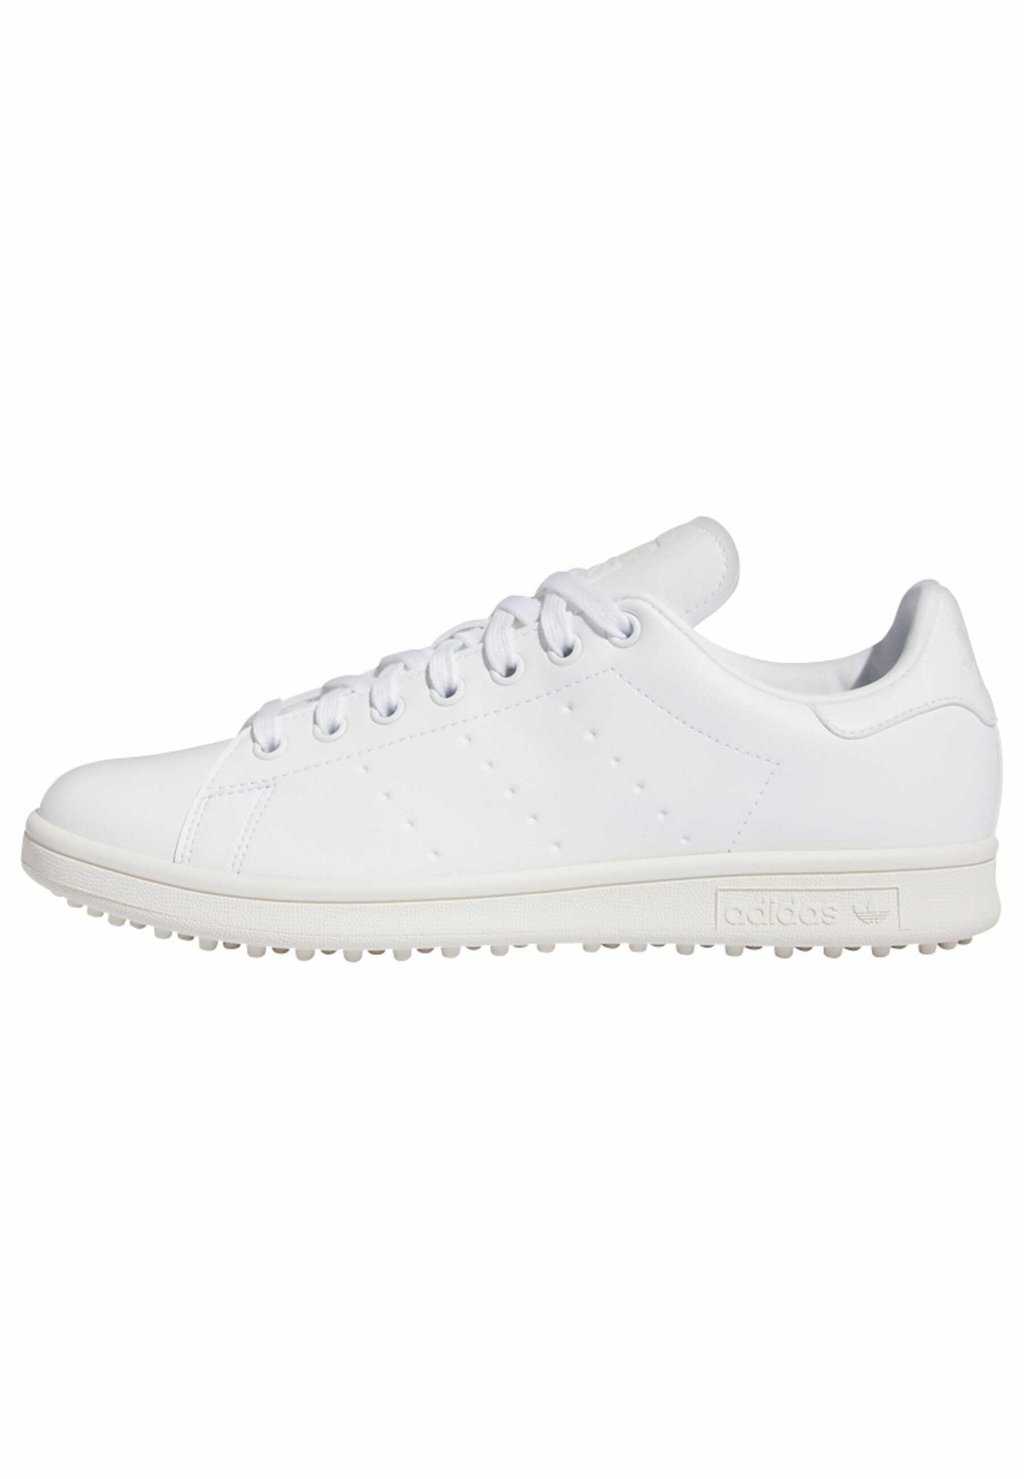 Обувь для гольфа Stan Smith Golf Shoe adidas Golf, цвет cloud white off white cloud white adidas originals stan smith bonega cloud white cloud white off white женские